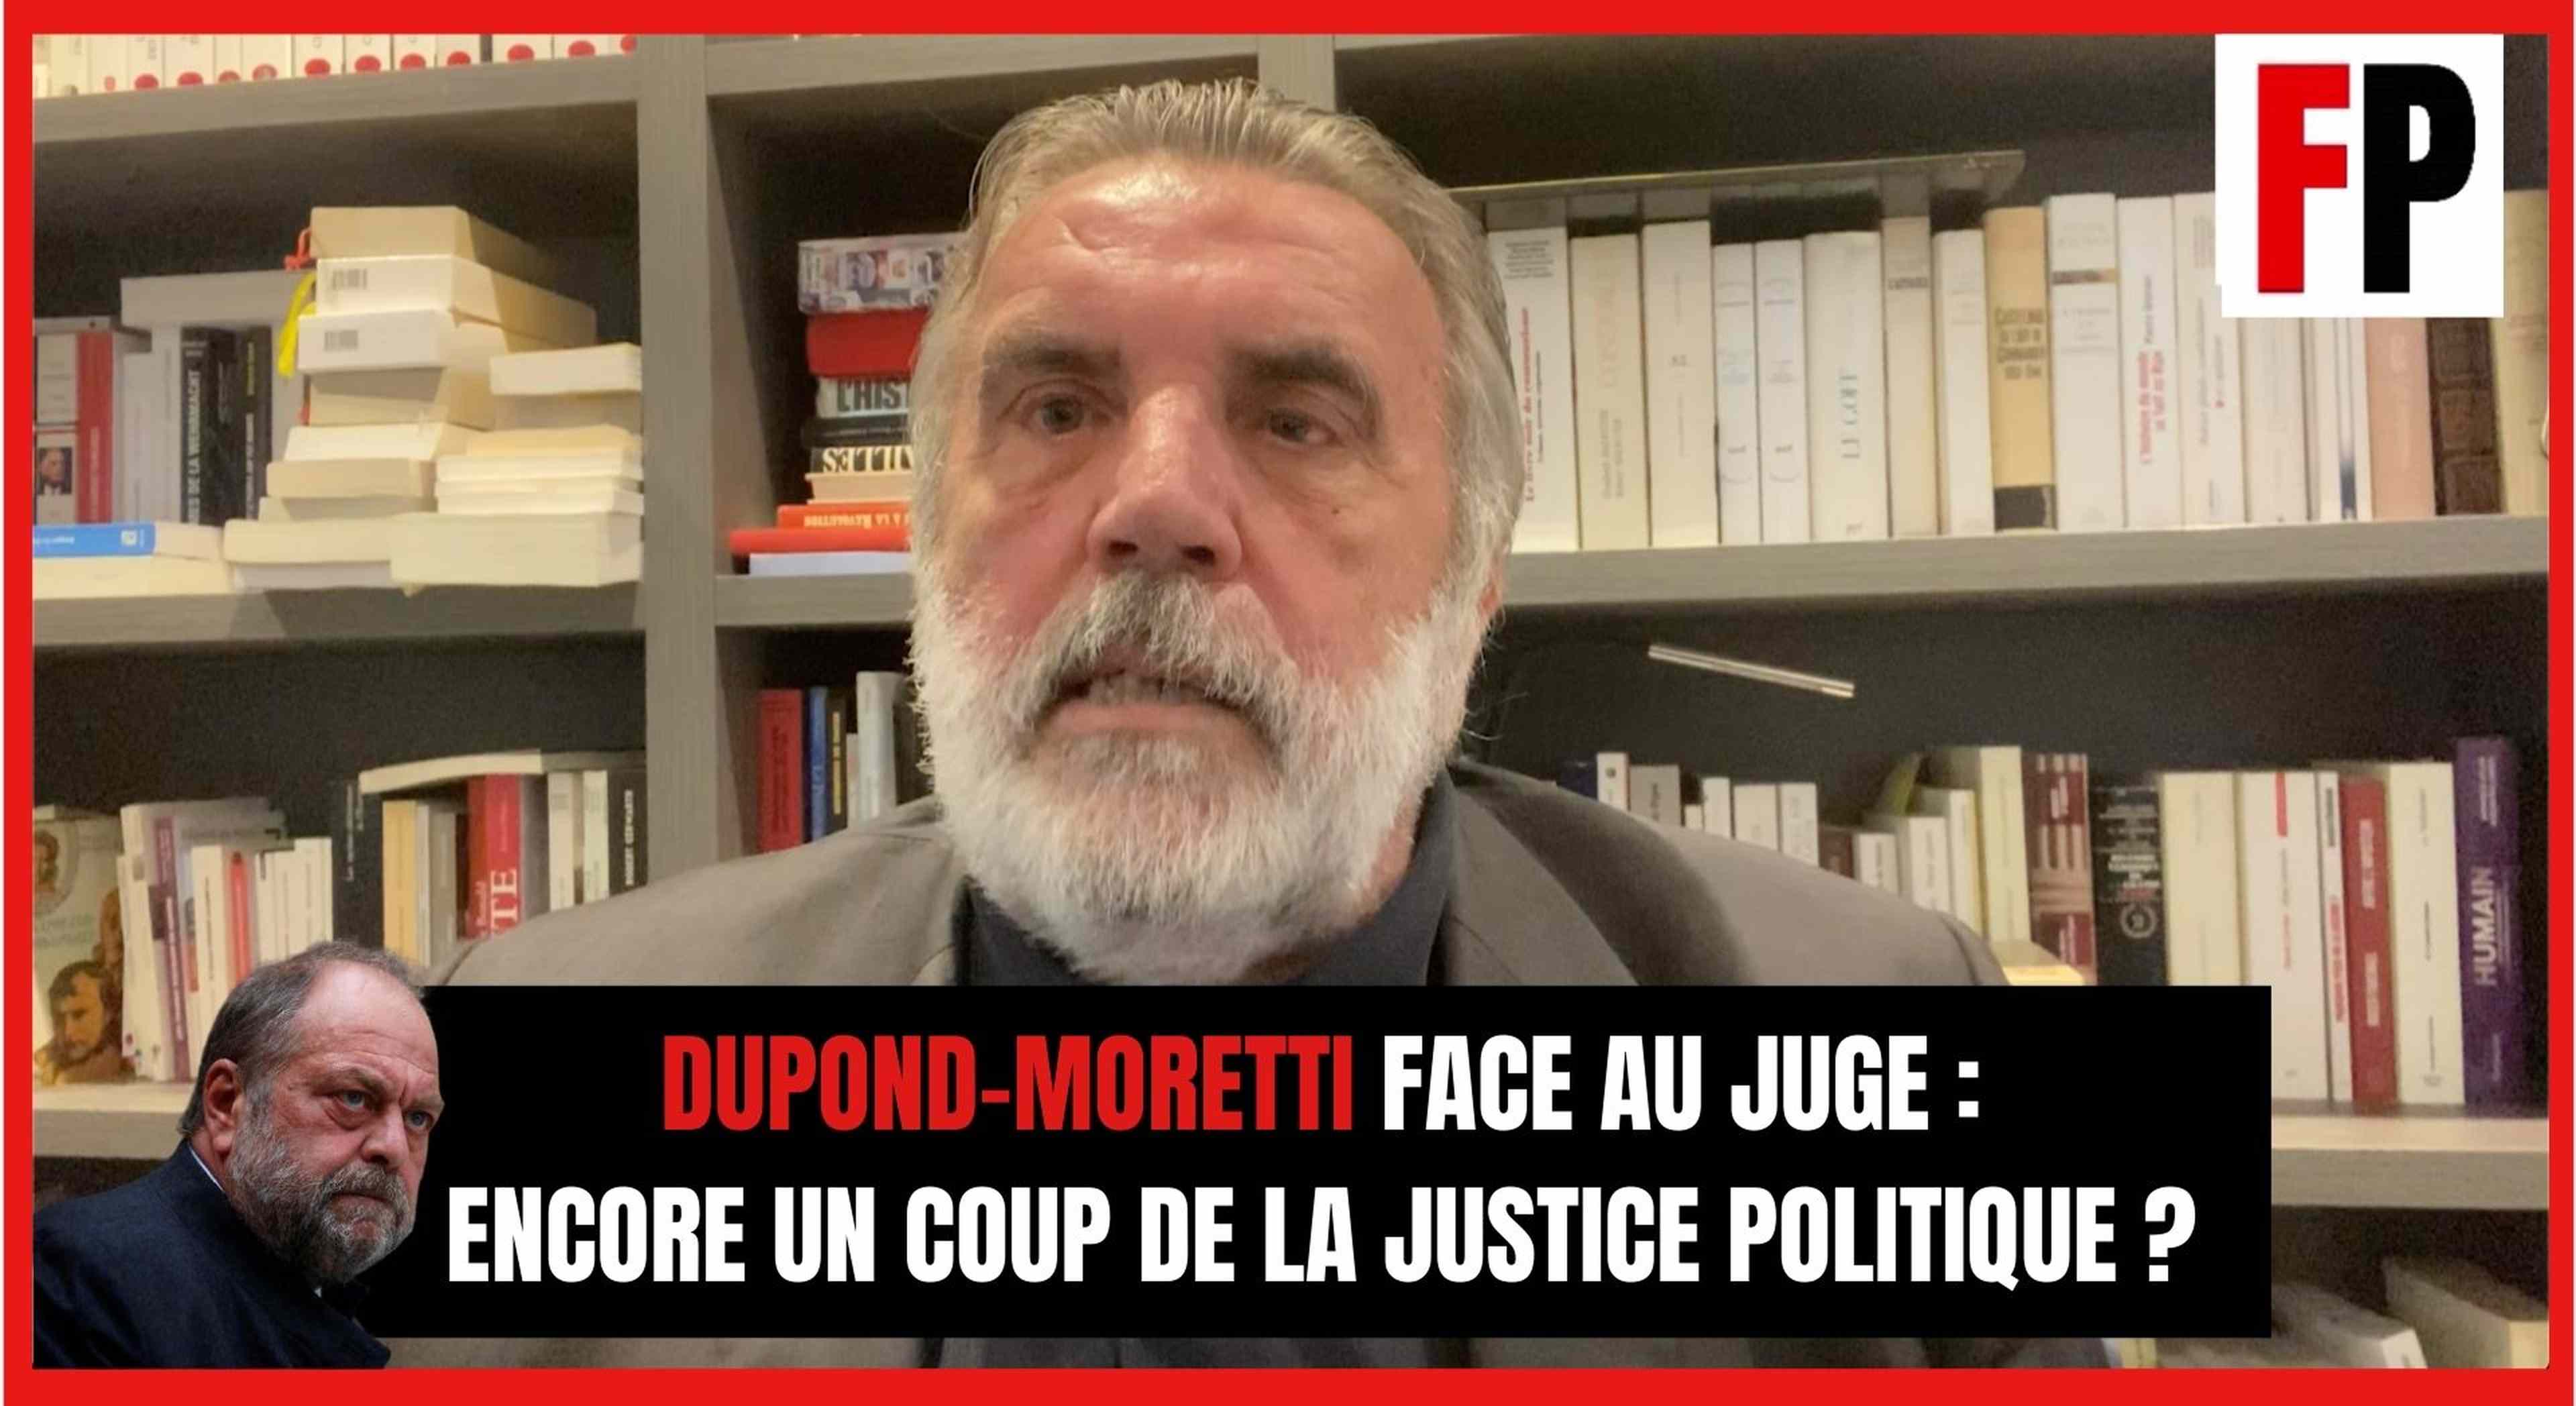 Dupond-Moretti face au juge : encore un coup de la justice politique ?